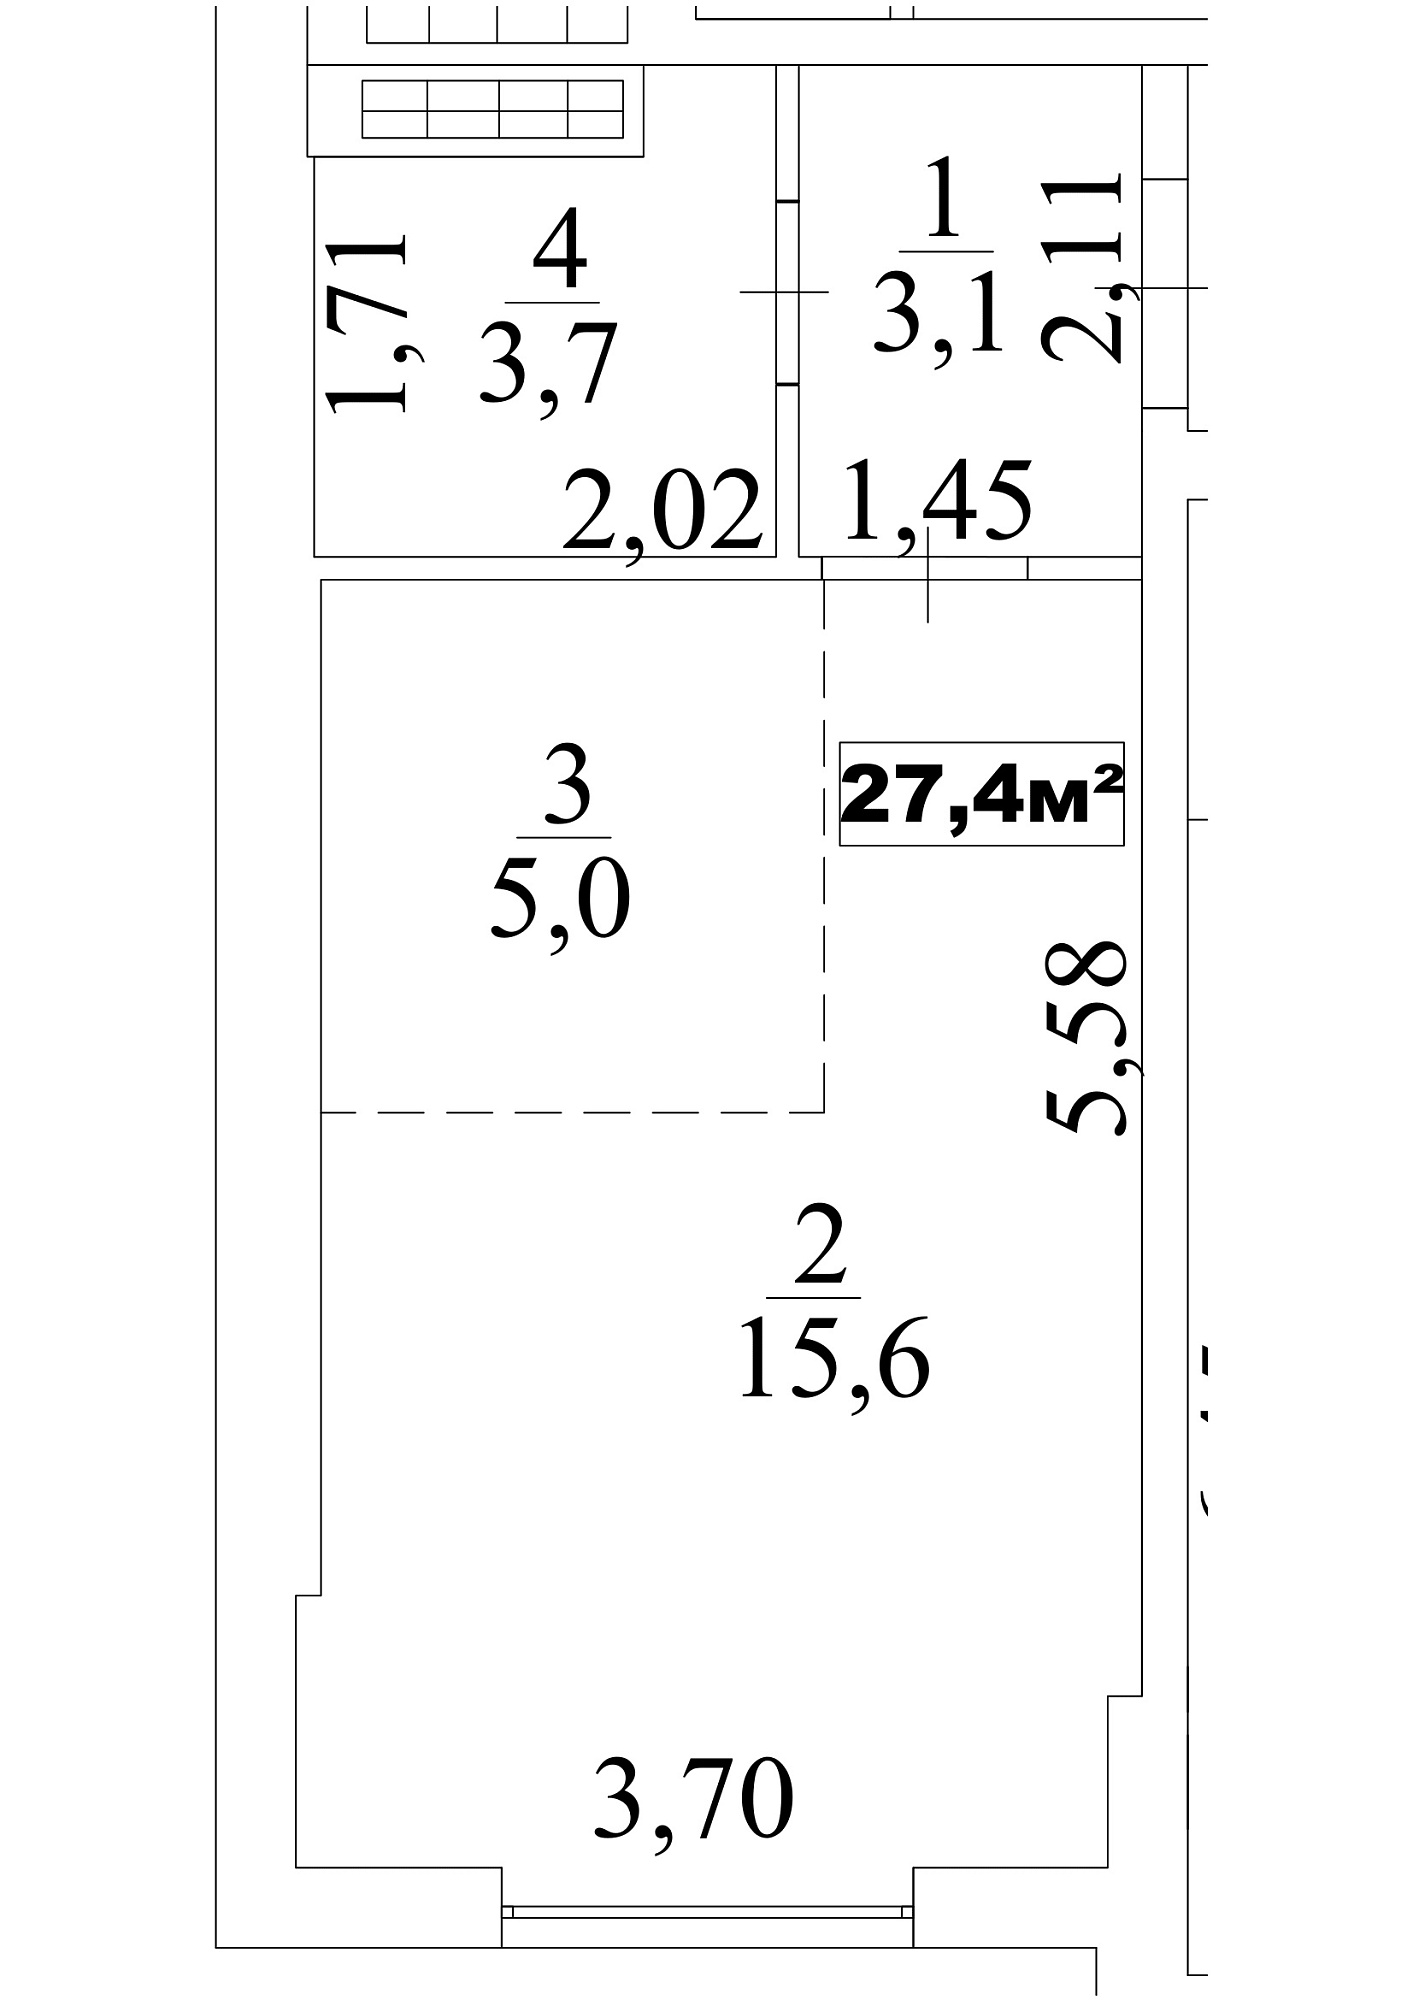 Планировка Smart-квартира площей 27.4м2, AB-10-04/0030а.